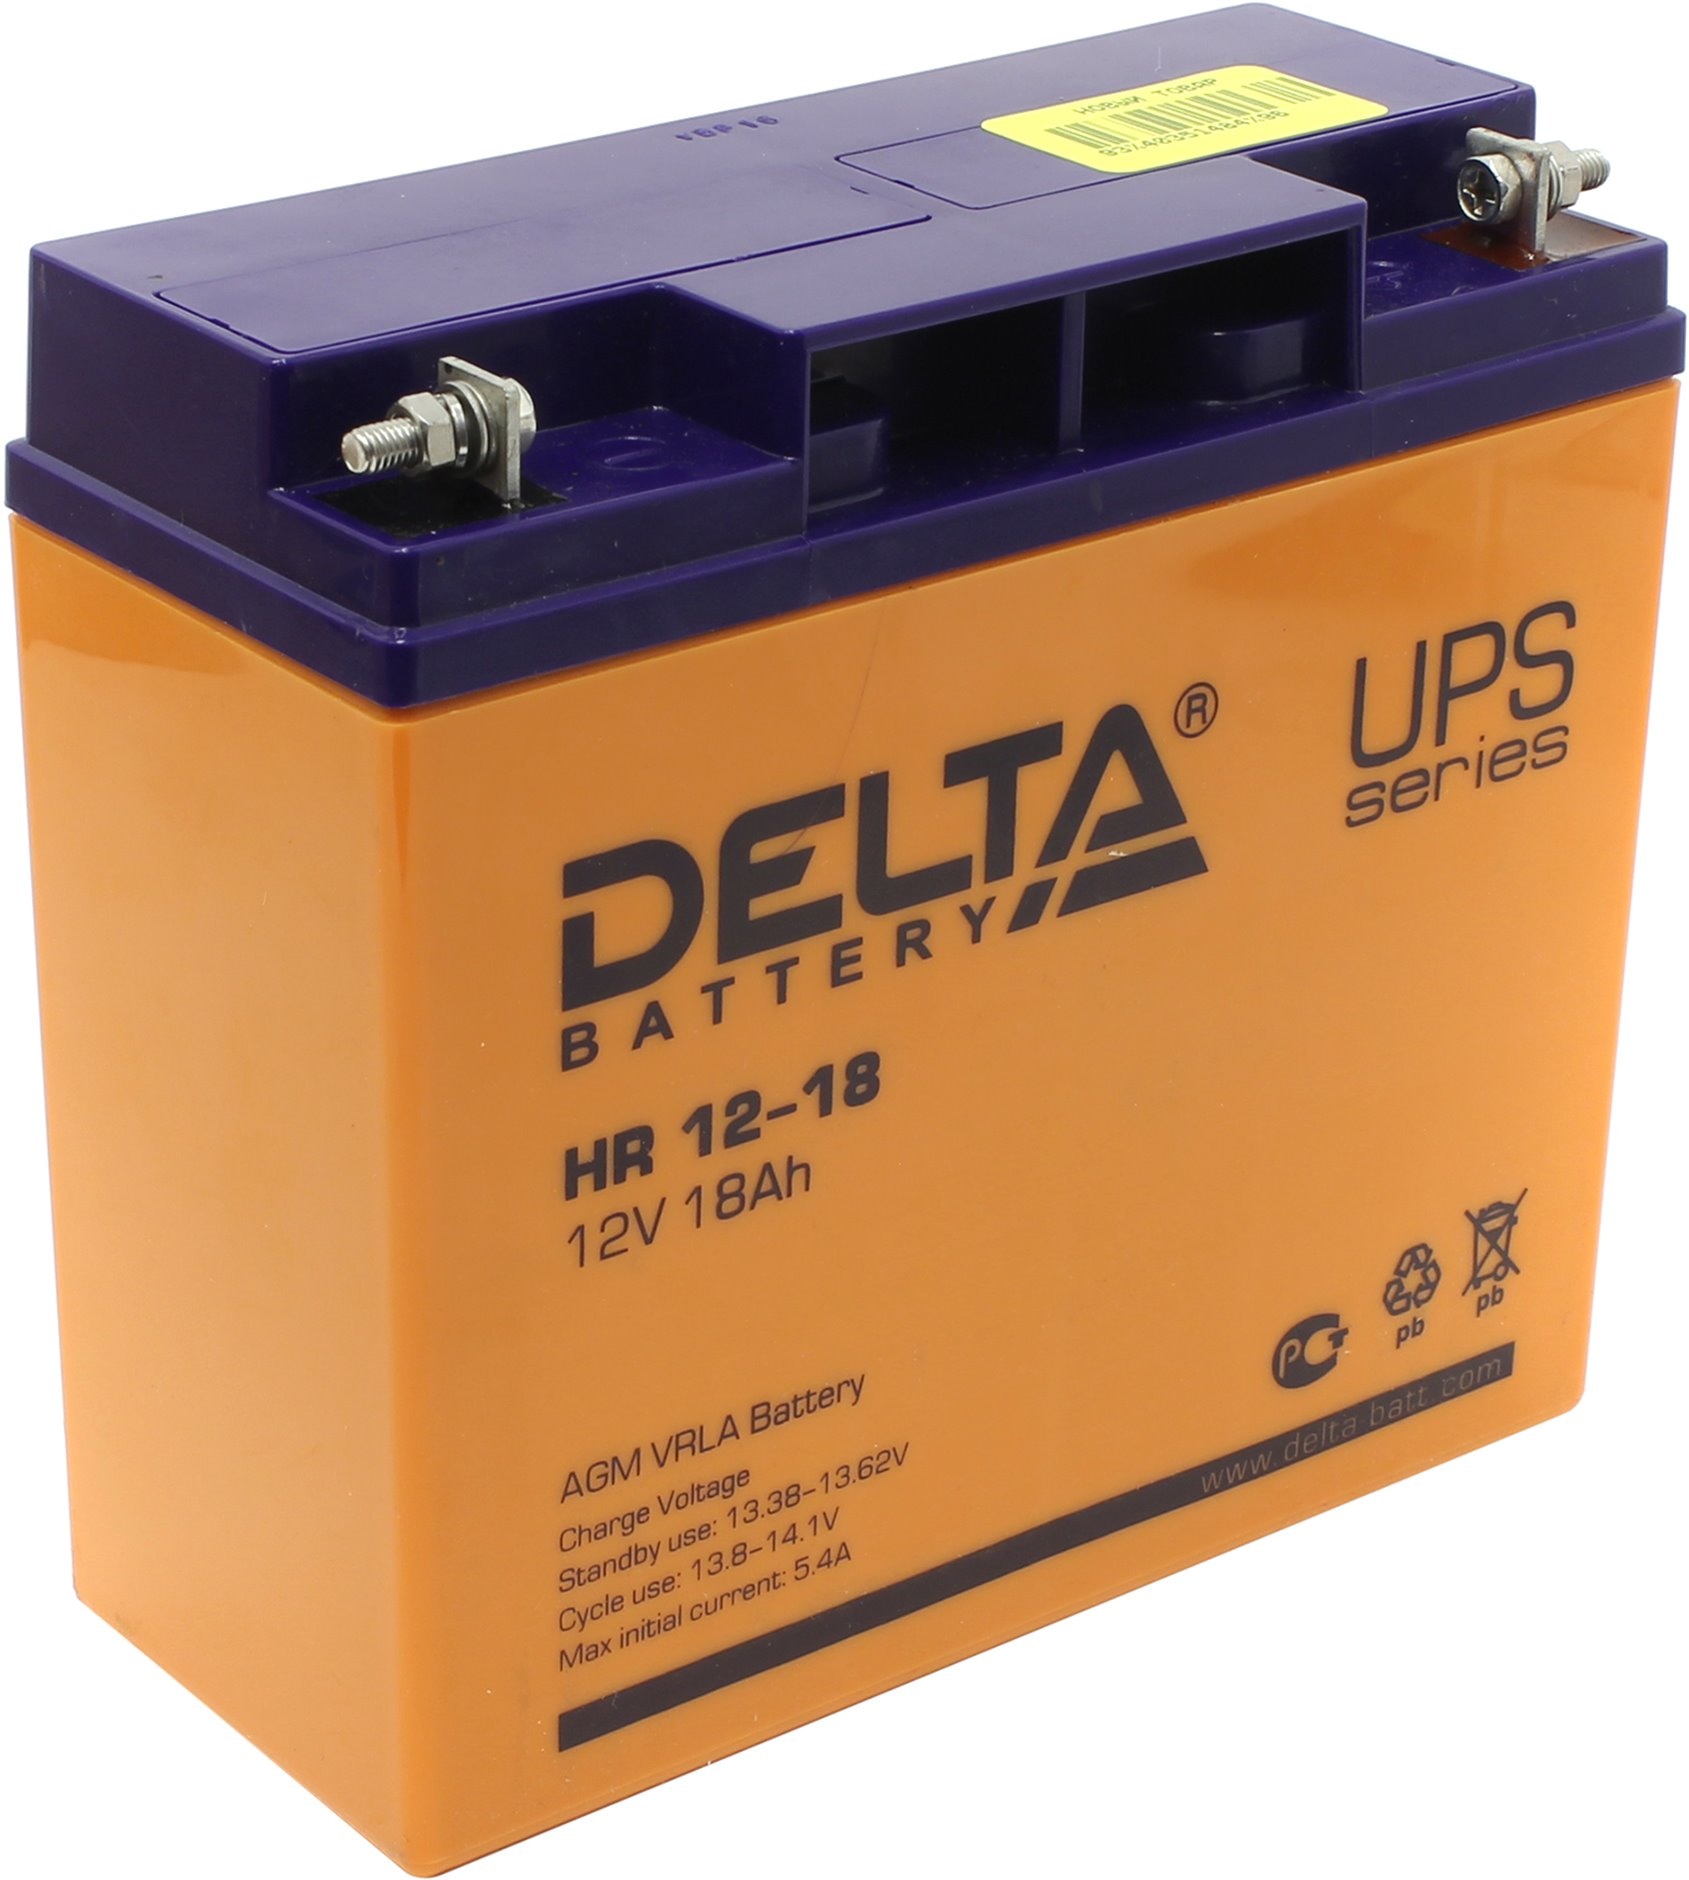  батарея Delta HR 12V 18Ah - цена,  на nout.kz